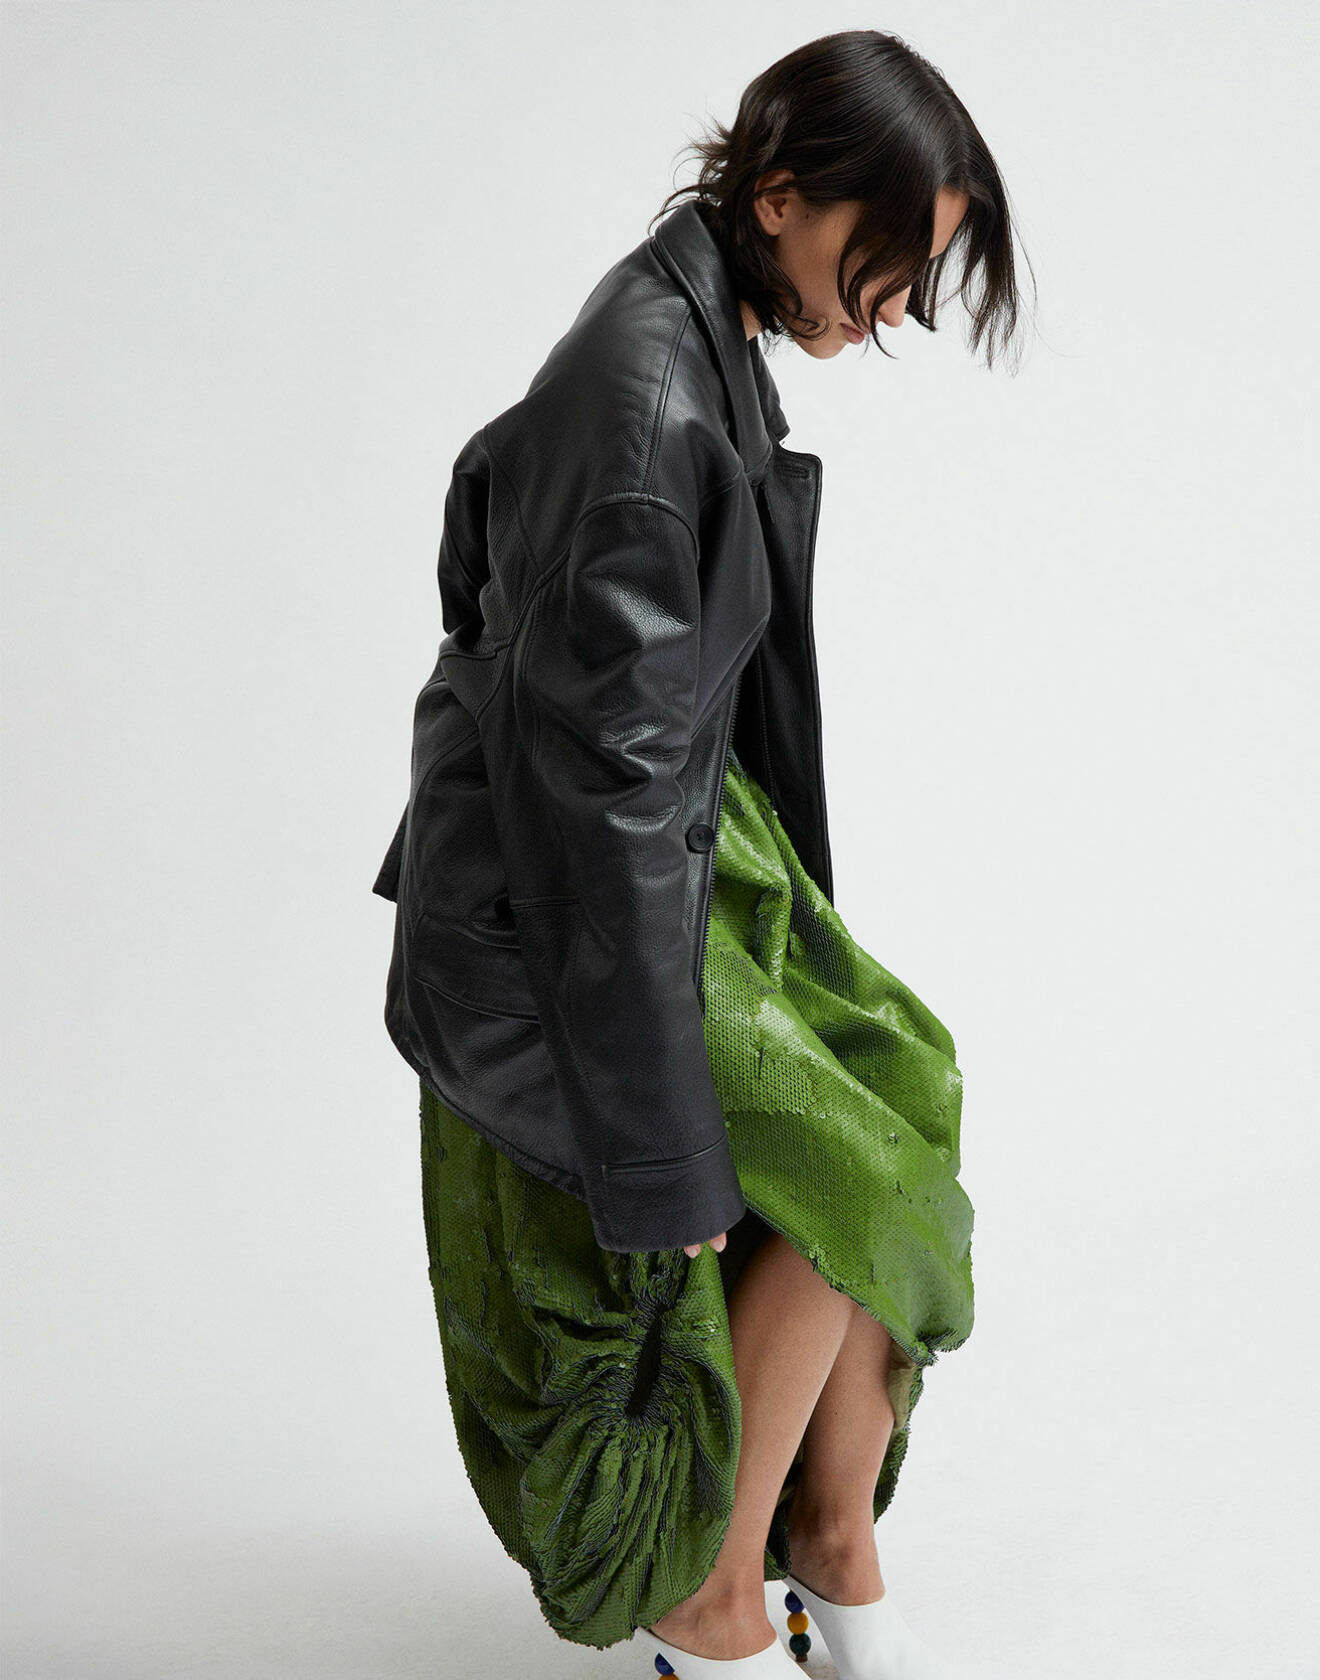 Modellen har på sig en grön kjol av återvunnen polyester och en svart skinnjacka